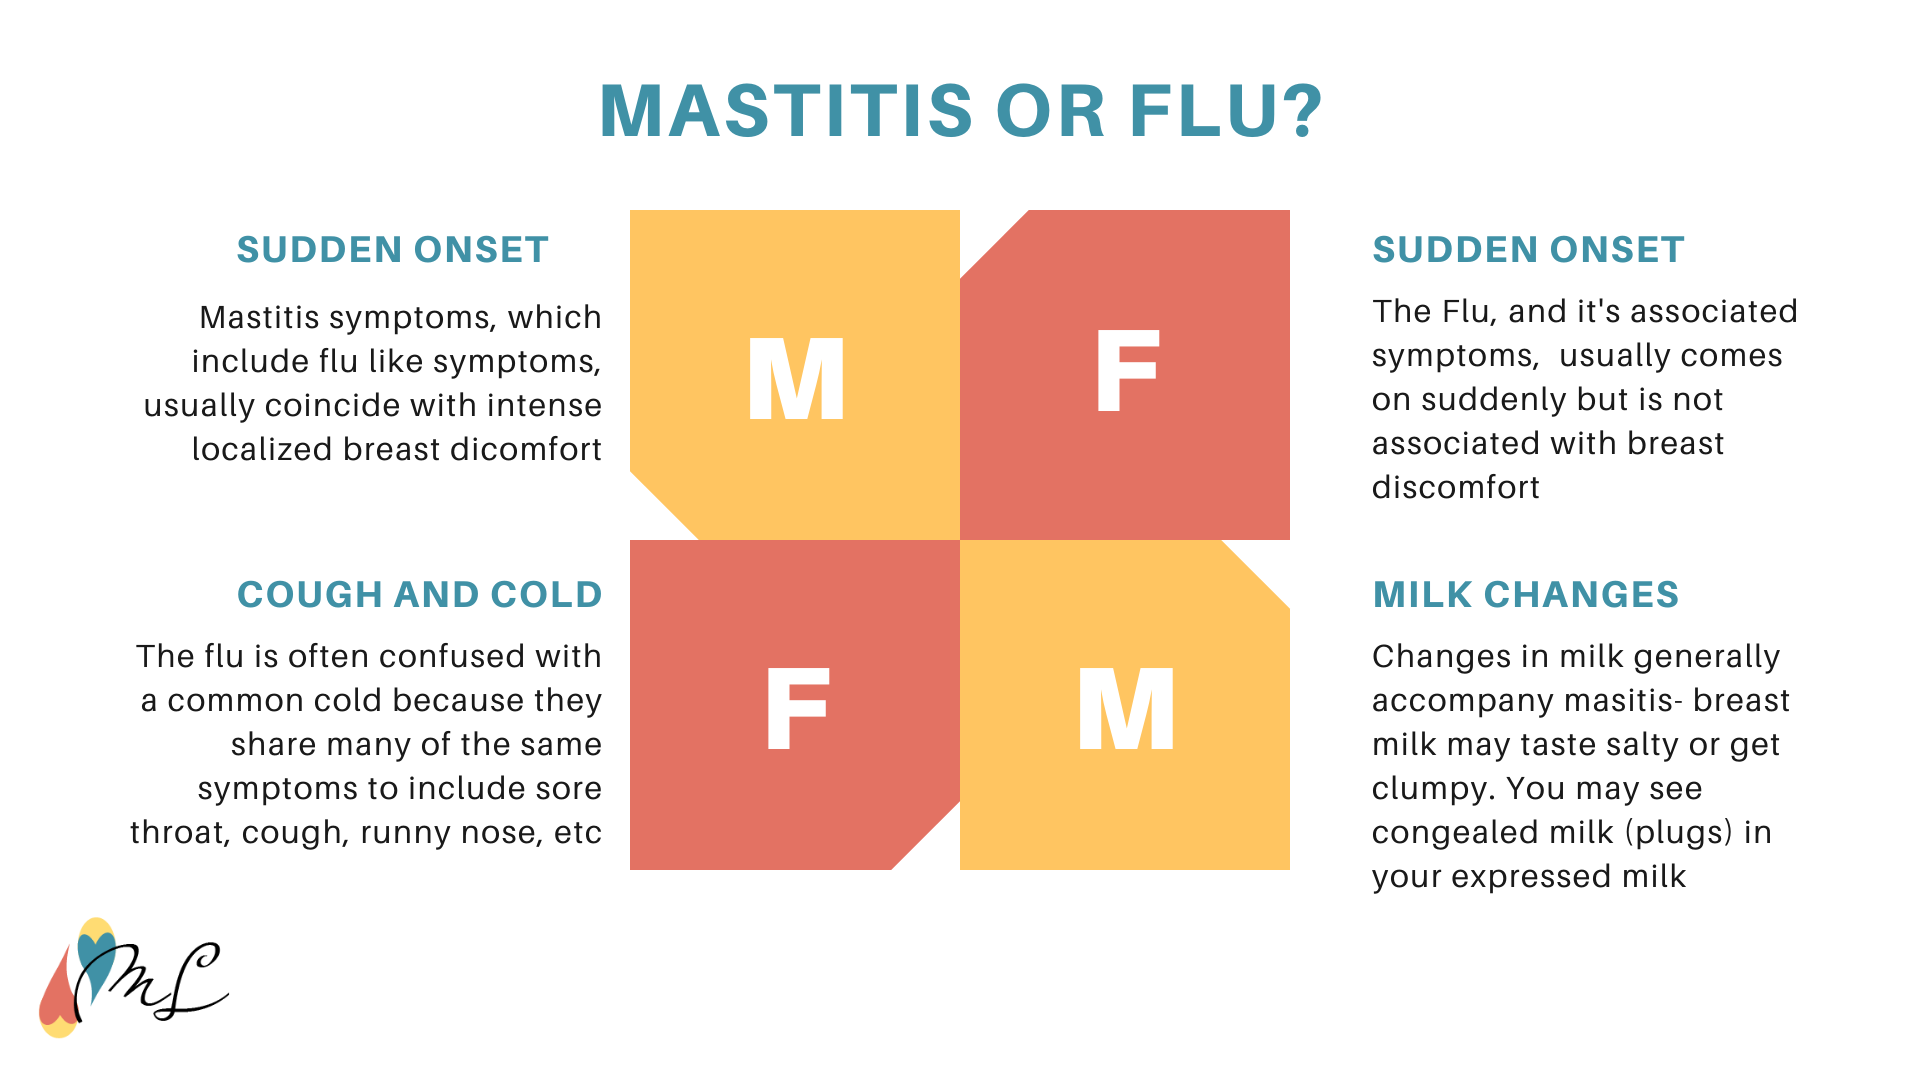 Mastitis - Symptoms, Treatment & Causes